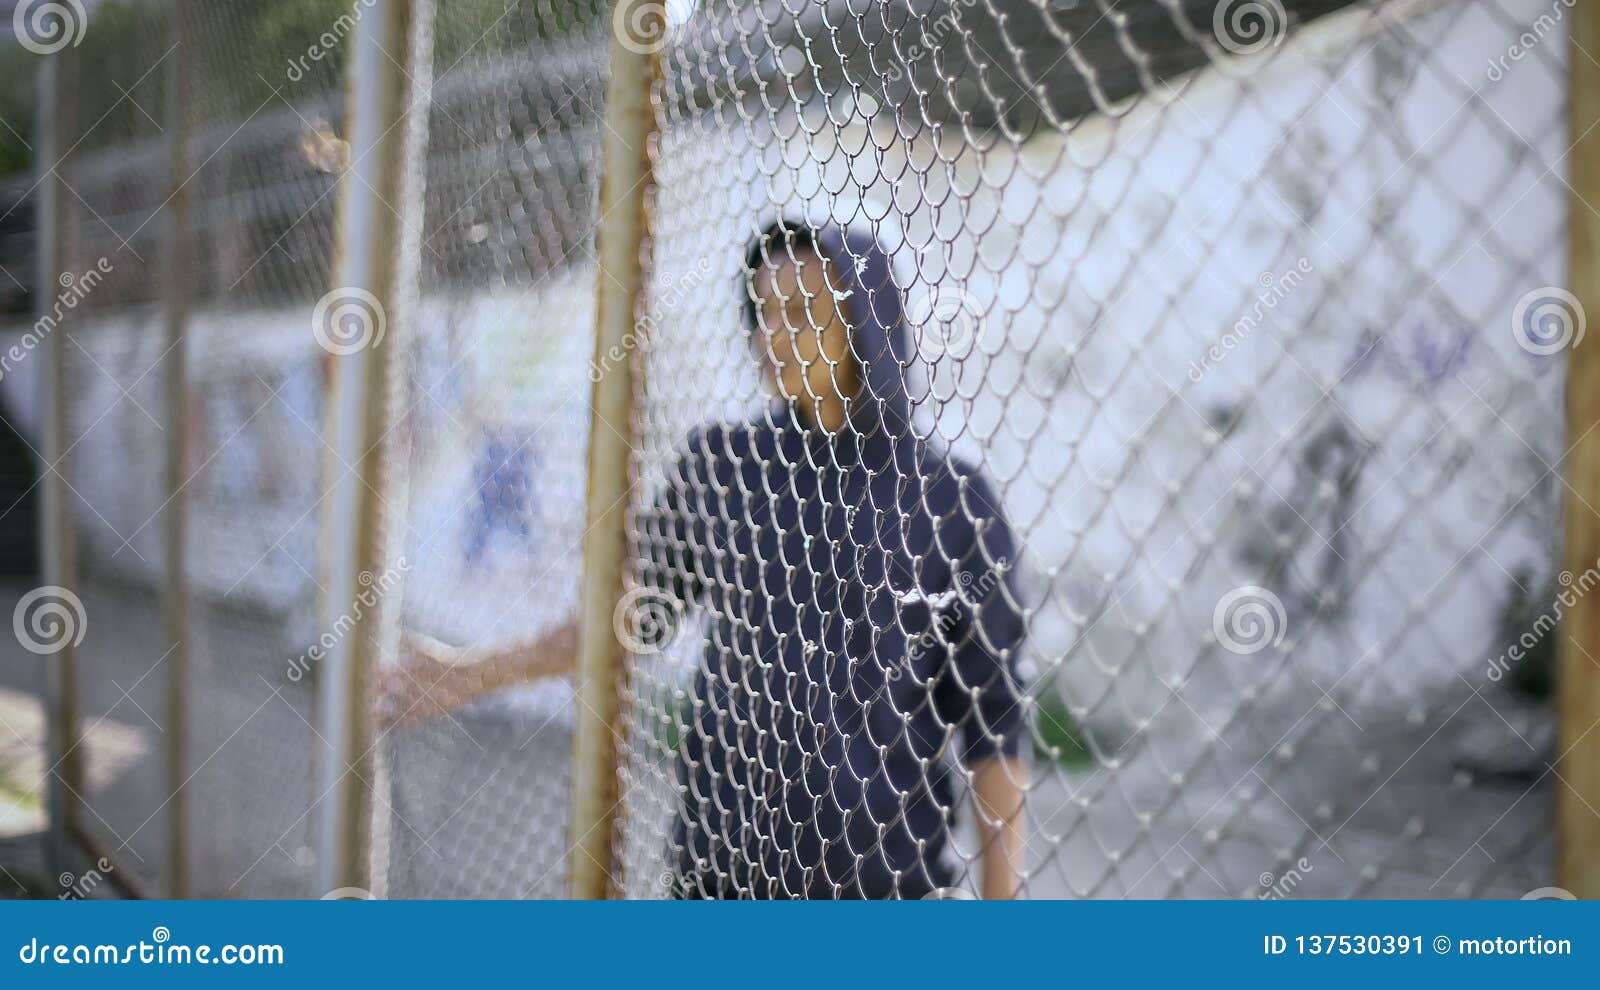 Prisioneiro Infantil Tenta Escapar Da Prisão. Imagem de Stock - Imagem de  infância, sala: 172691801